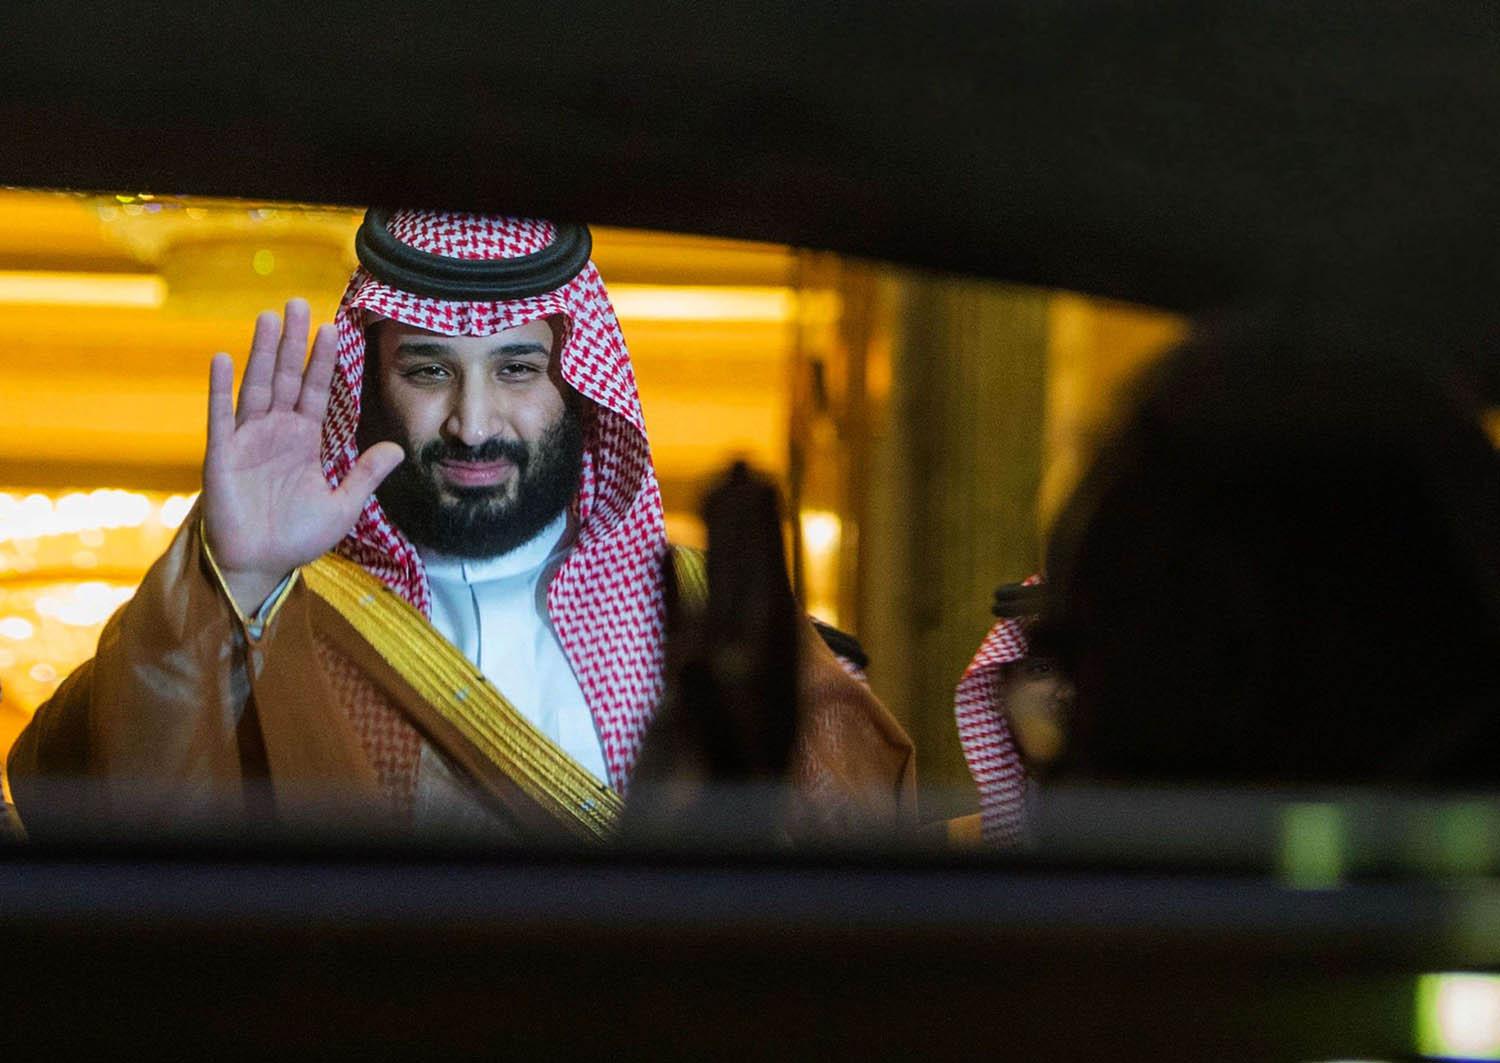 ولي العهد السعودي الأمير محمد بن سلمان يلوح مودعا لرئيس الوزراء العراقي عادل عبدالمهدي